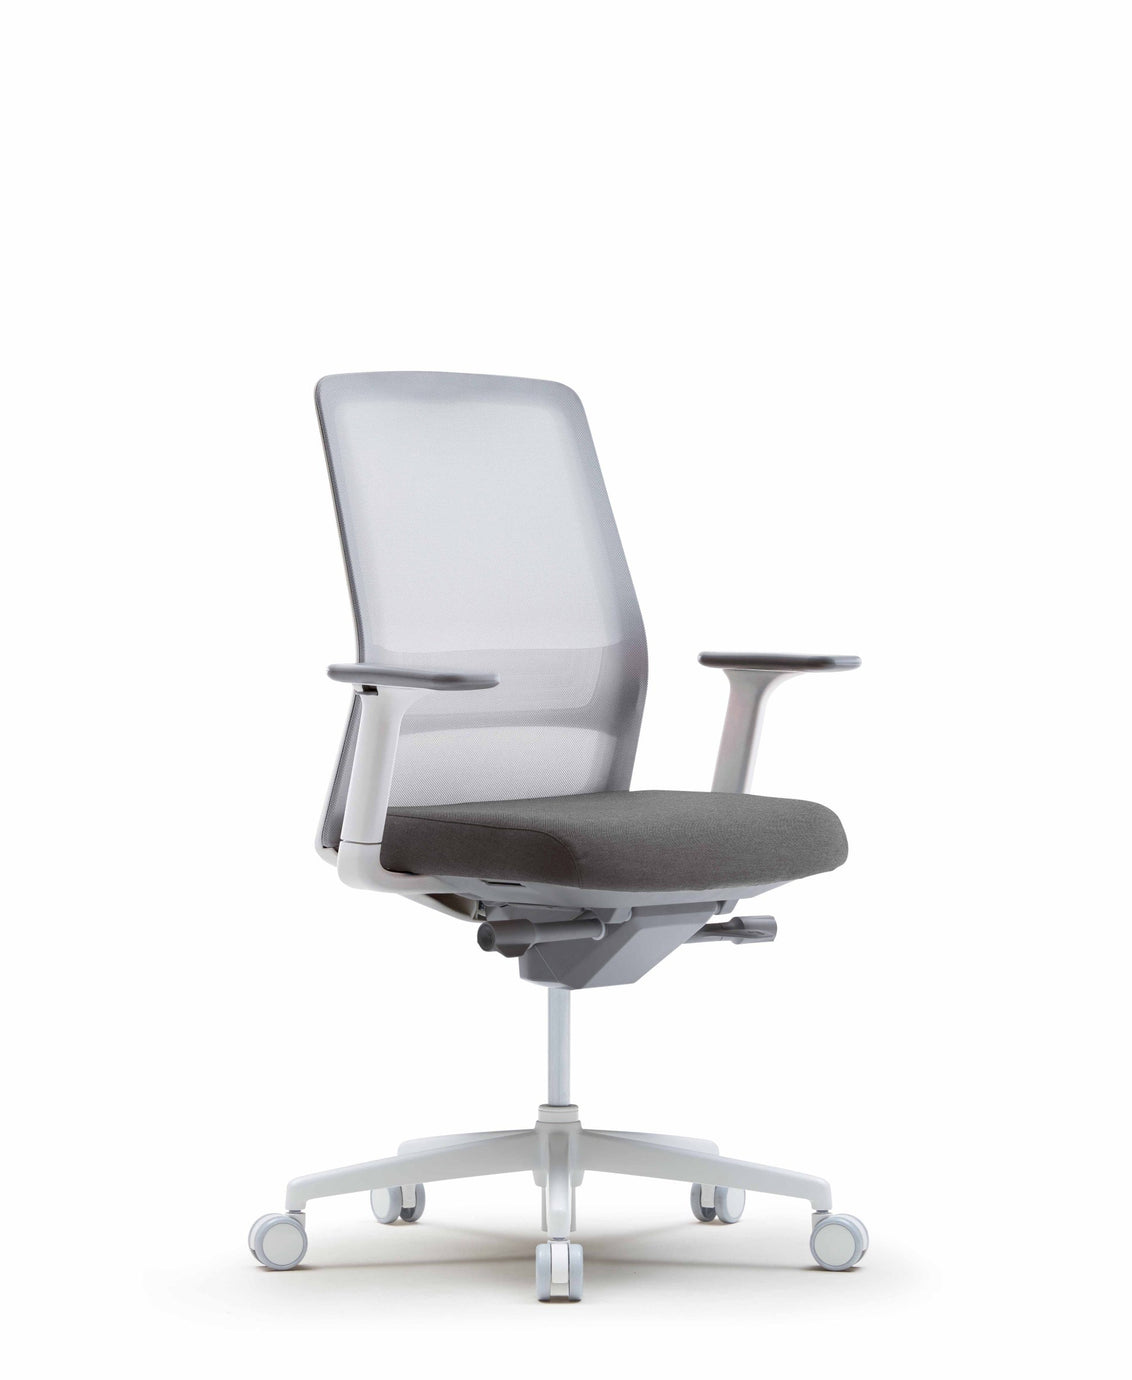 FURSYS SIDIZ T40 White Frame Home Office Desk Chair - SIHOO AustraliaFURSYS SIDIZ T40 White Frame Home Office Desk Chair